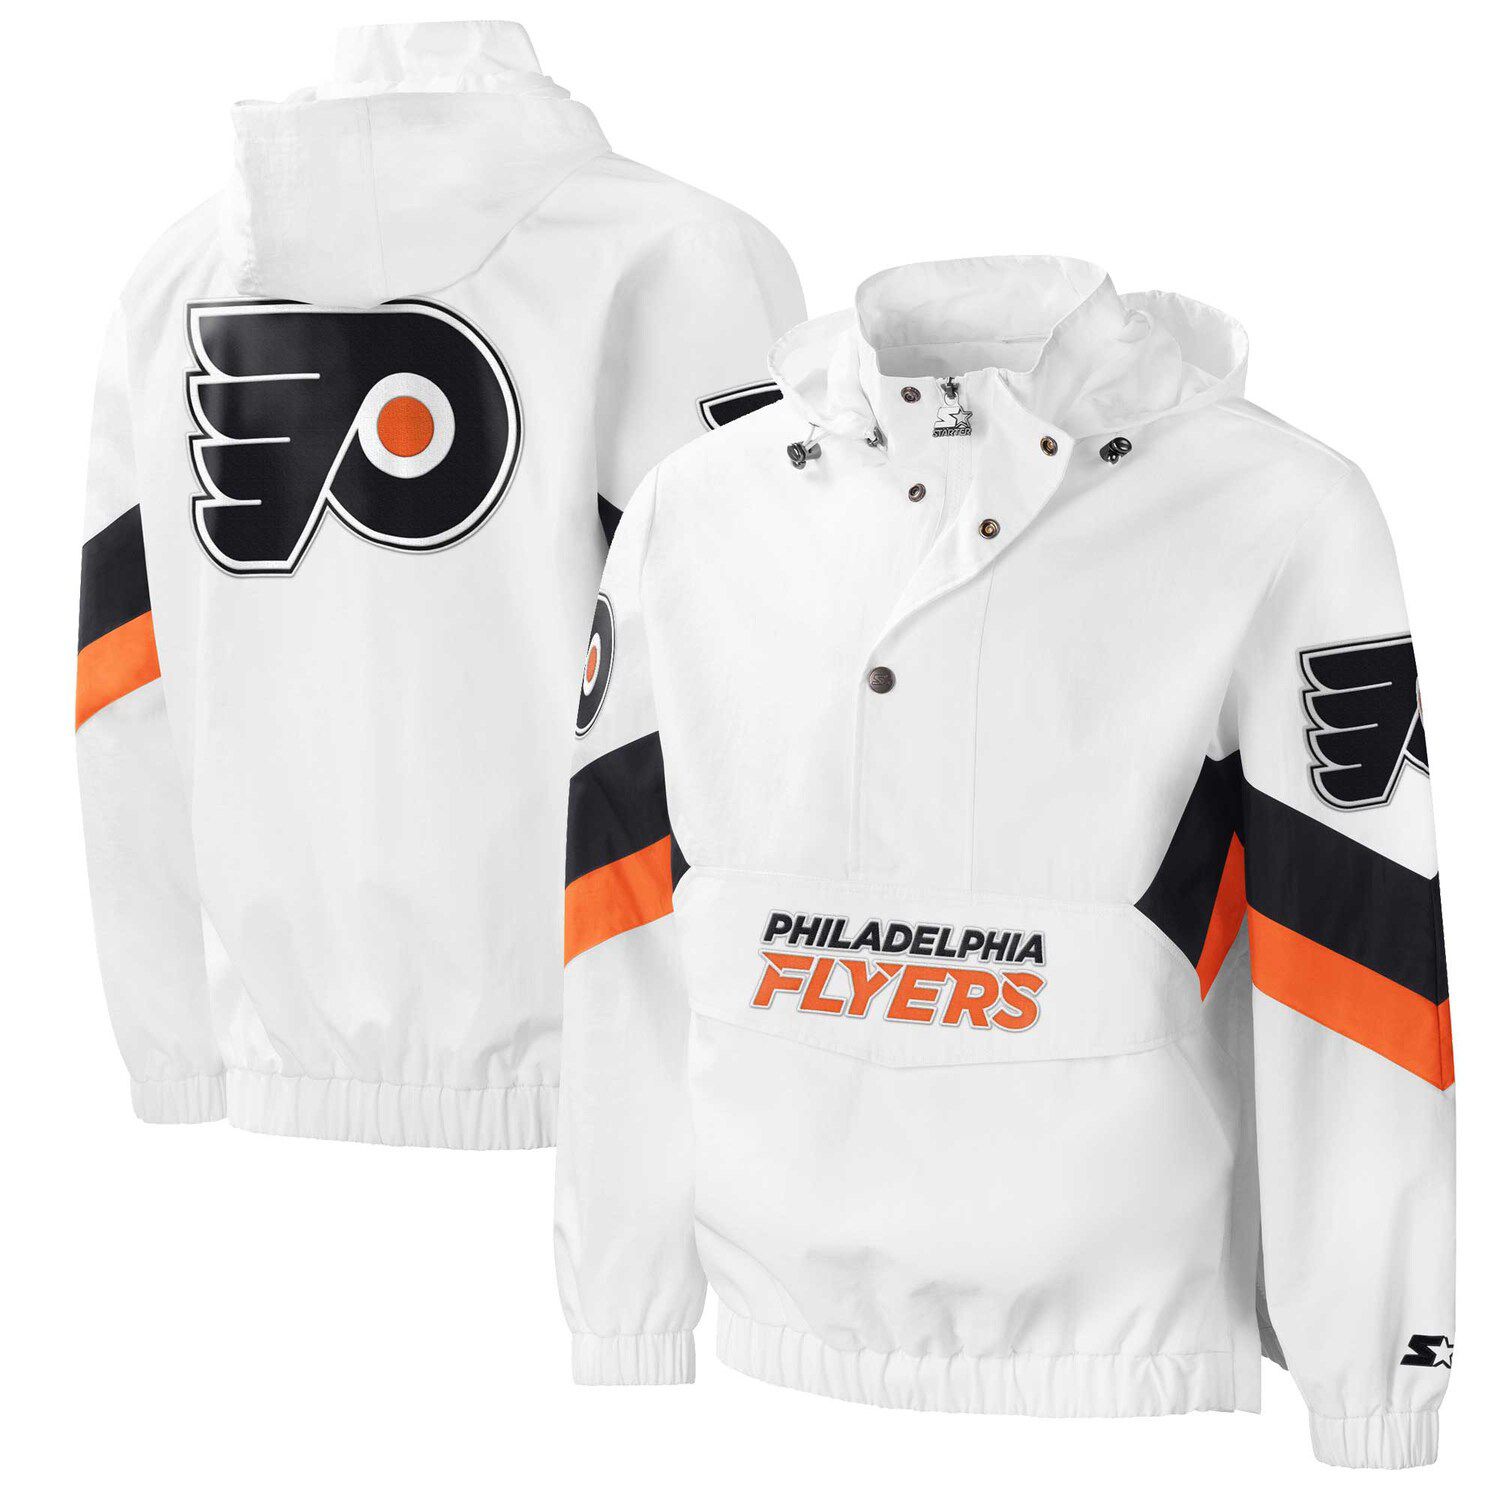 Philadelphia Flyers '22 Reverse Retro Authentic Pro Hoodie